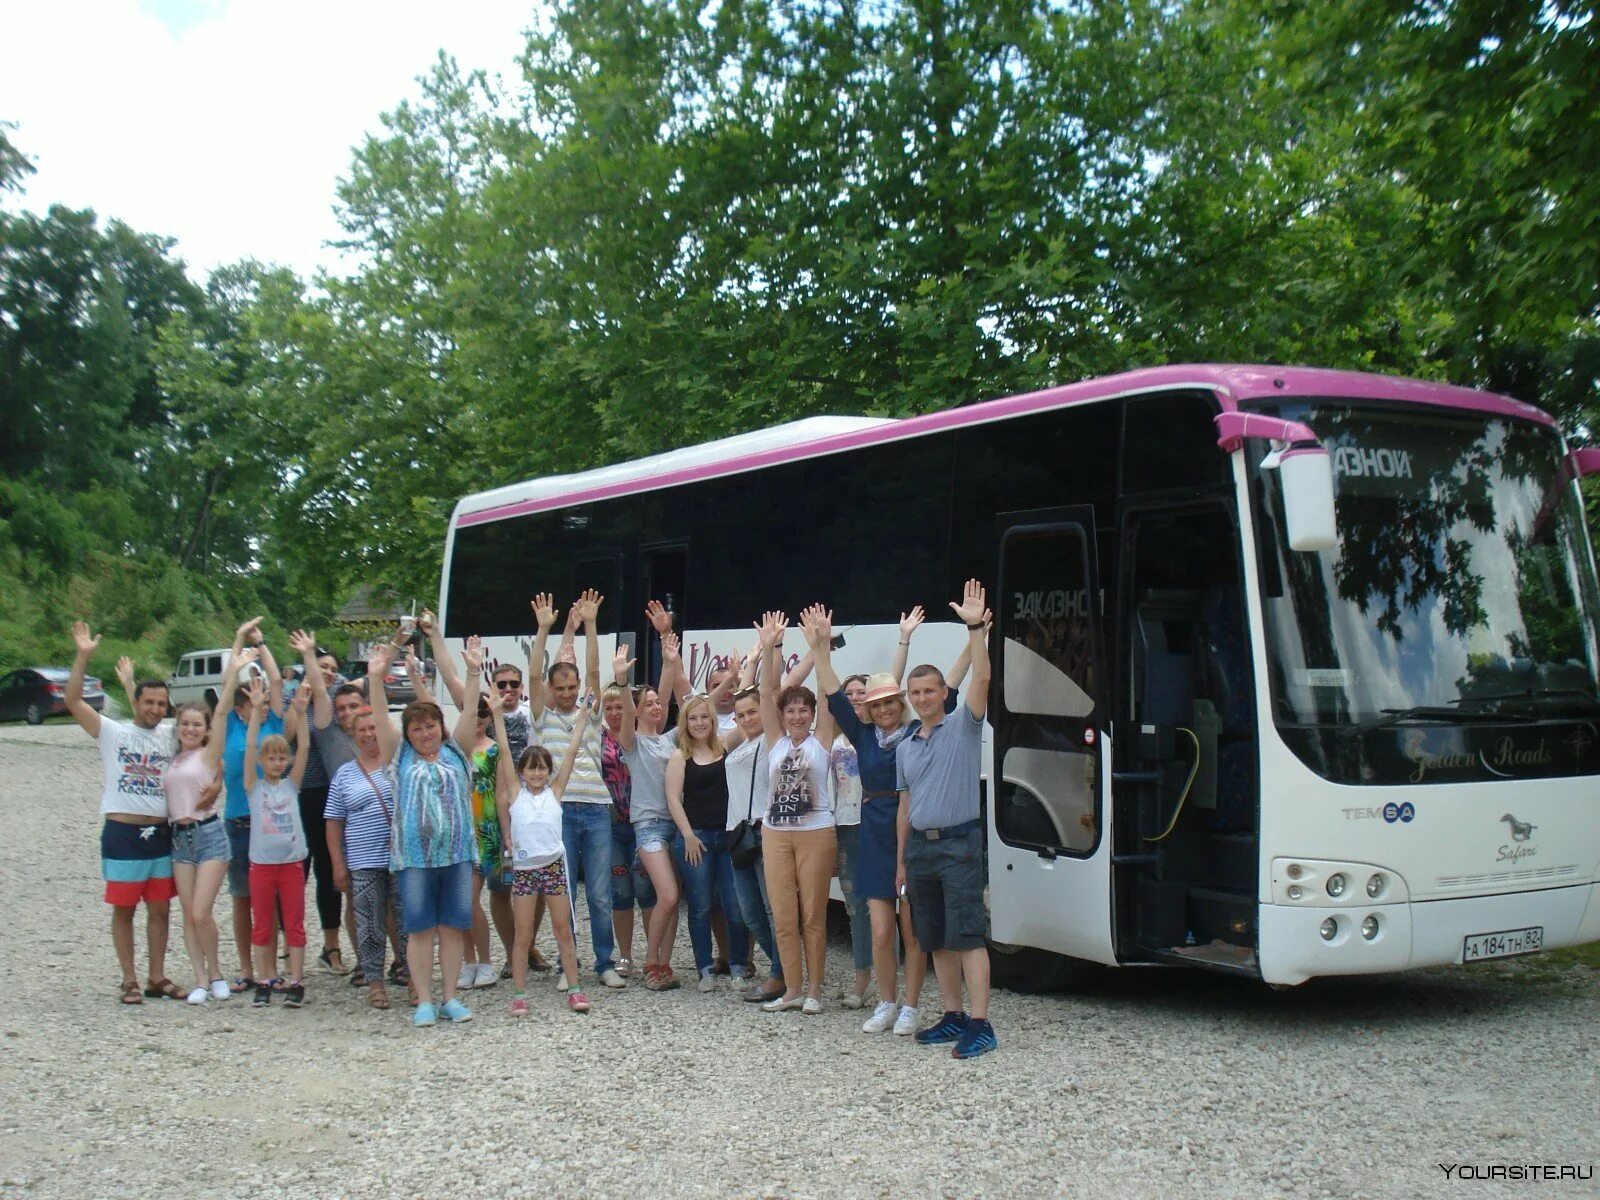 Экскурсия на автобусе. Автобусные туры. Экскурсионные автобусы в Абхазии. Туристические автобусы в Абхазии. Отзывы автобусных экскурсиях